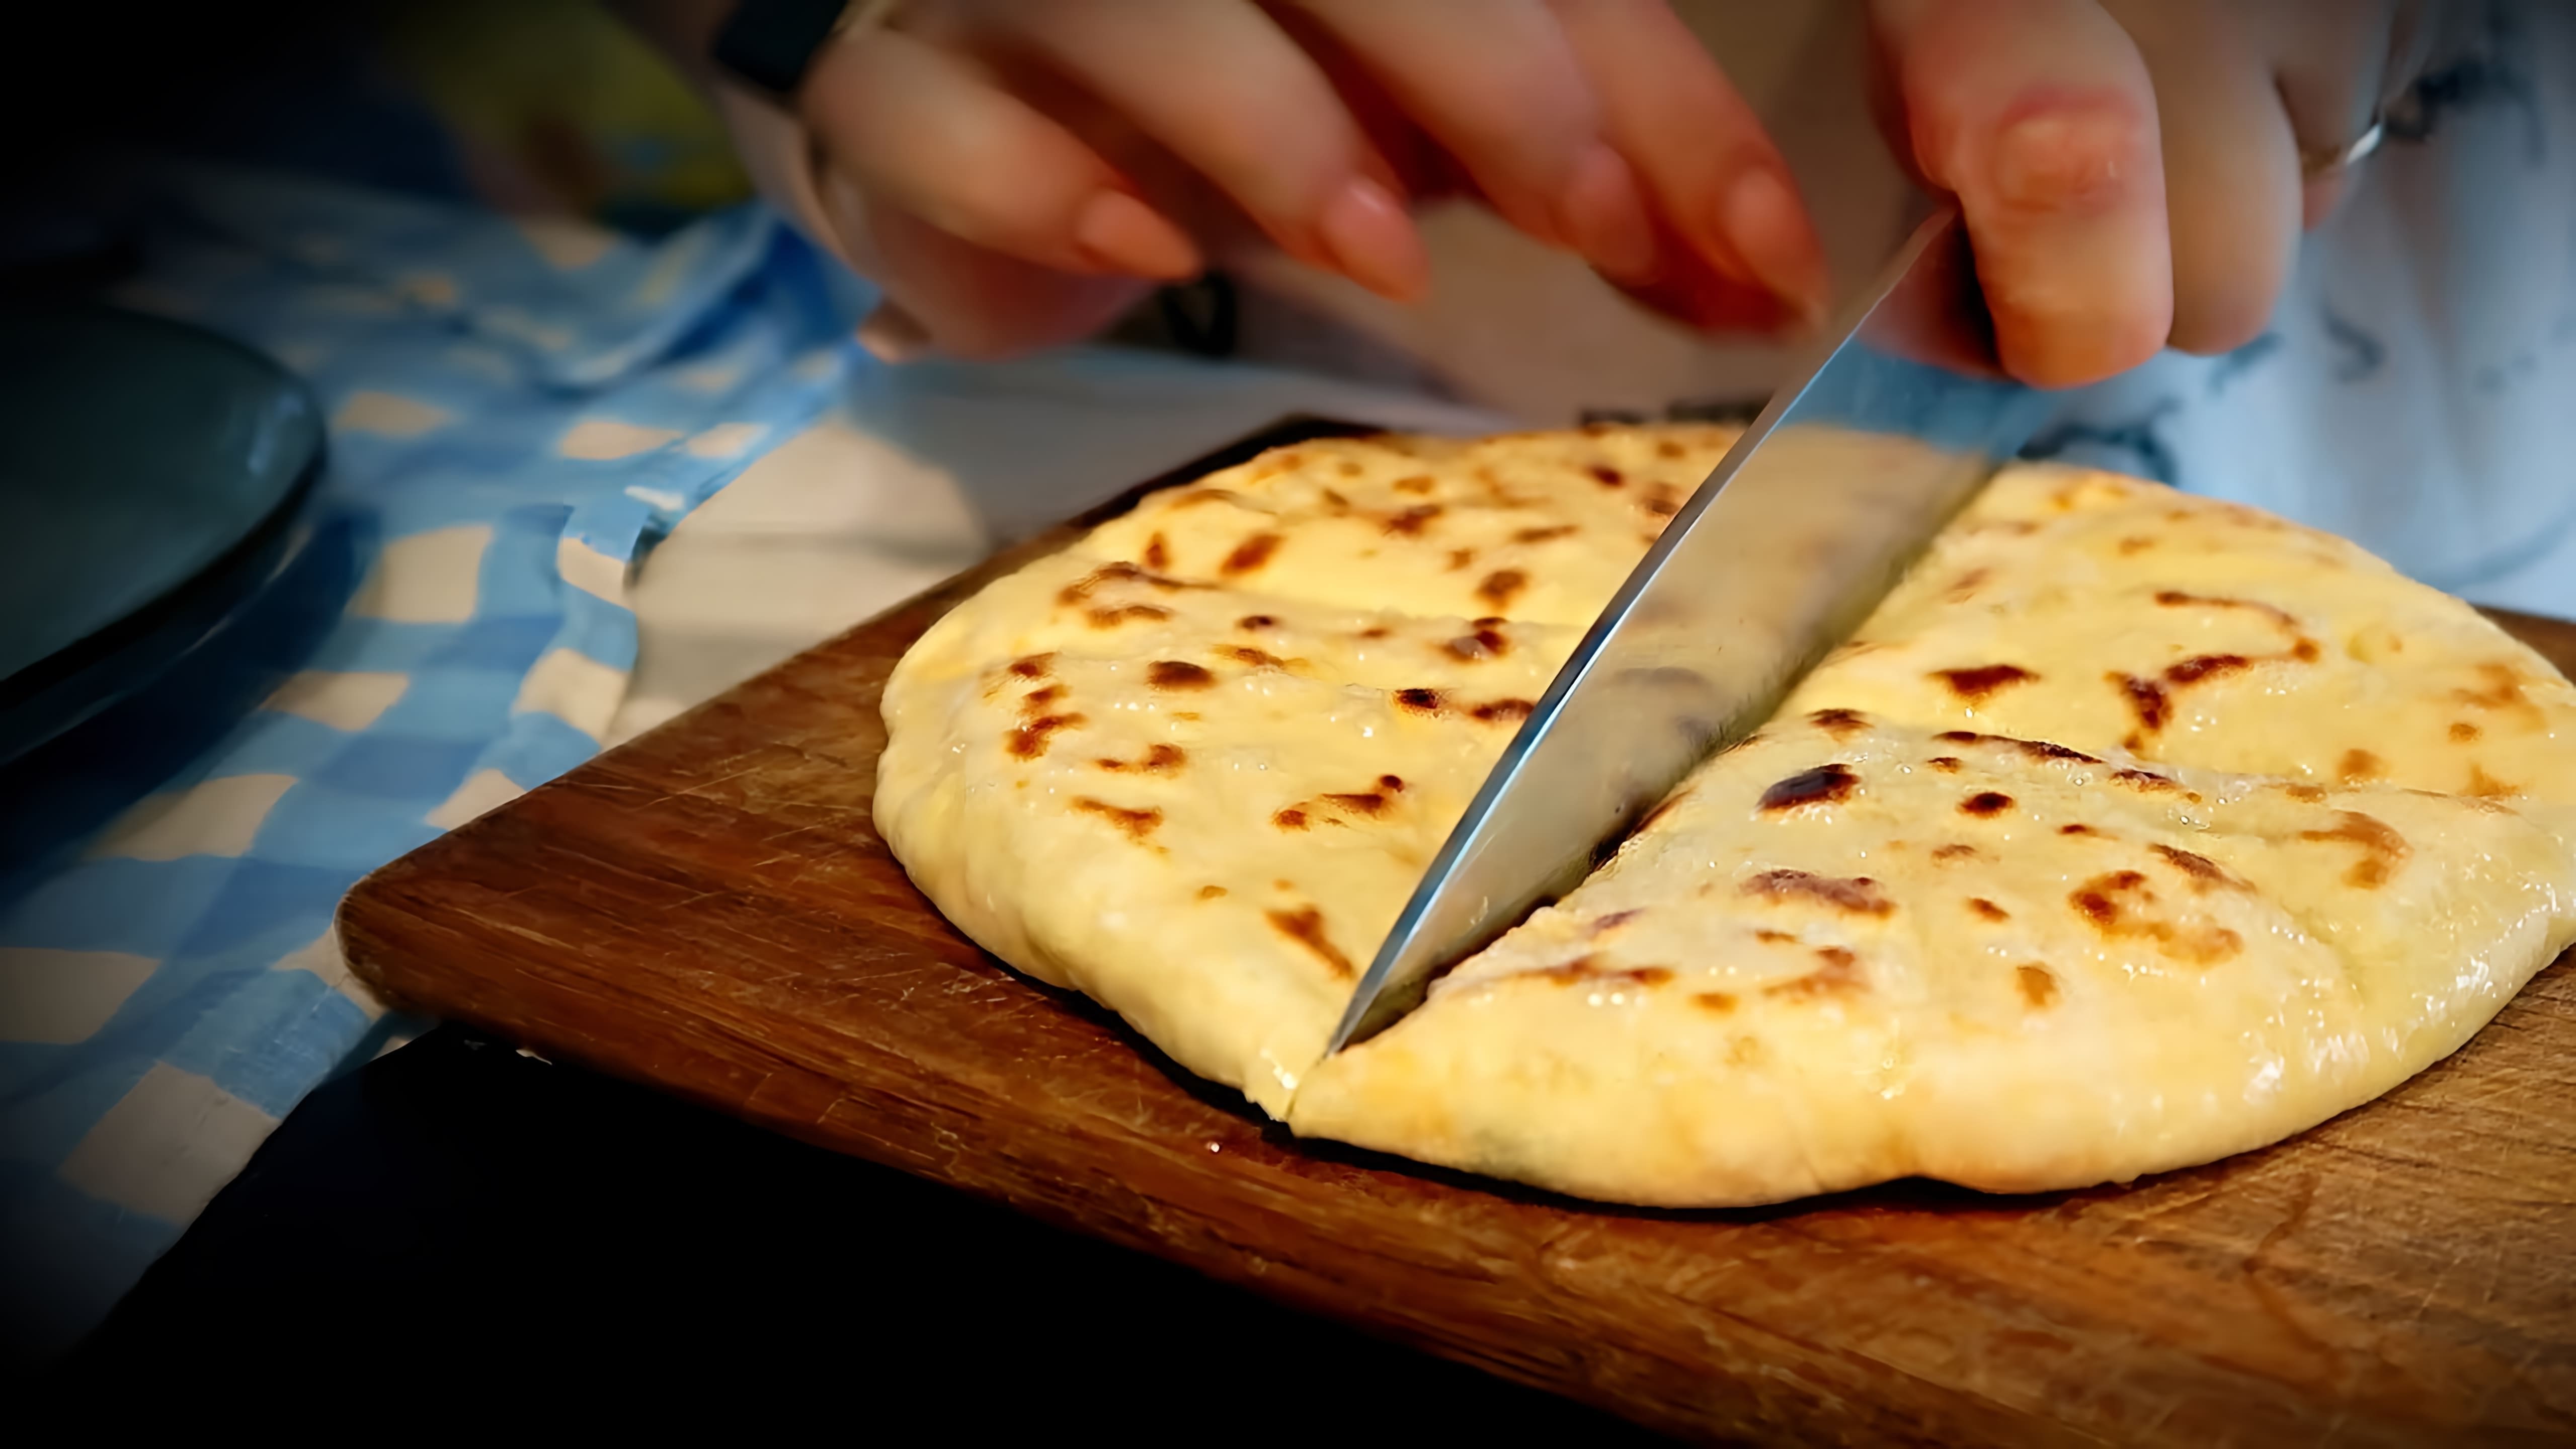 В этом видео демонстрируется процесс приготовления хычинов с творогом, сыром и зеленью